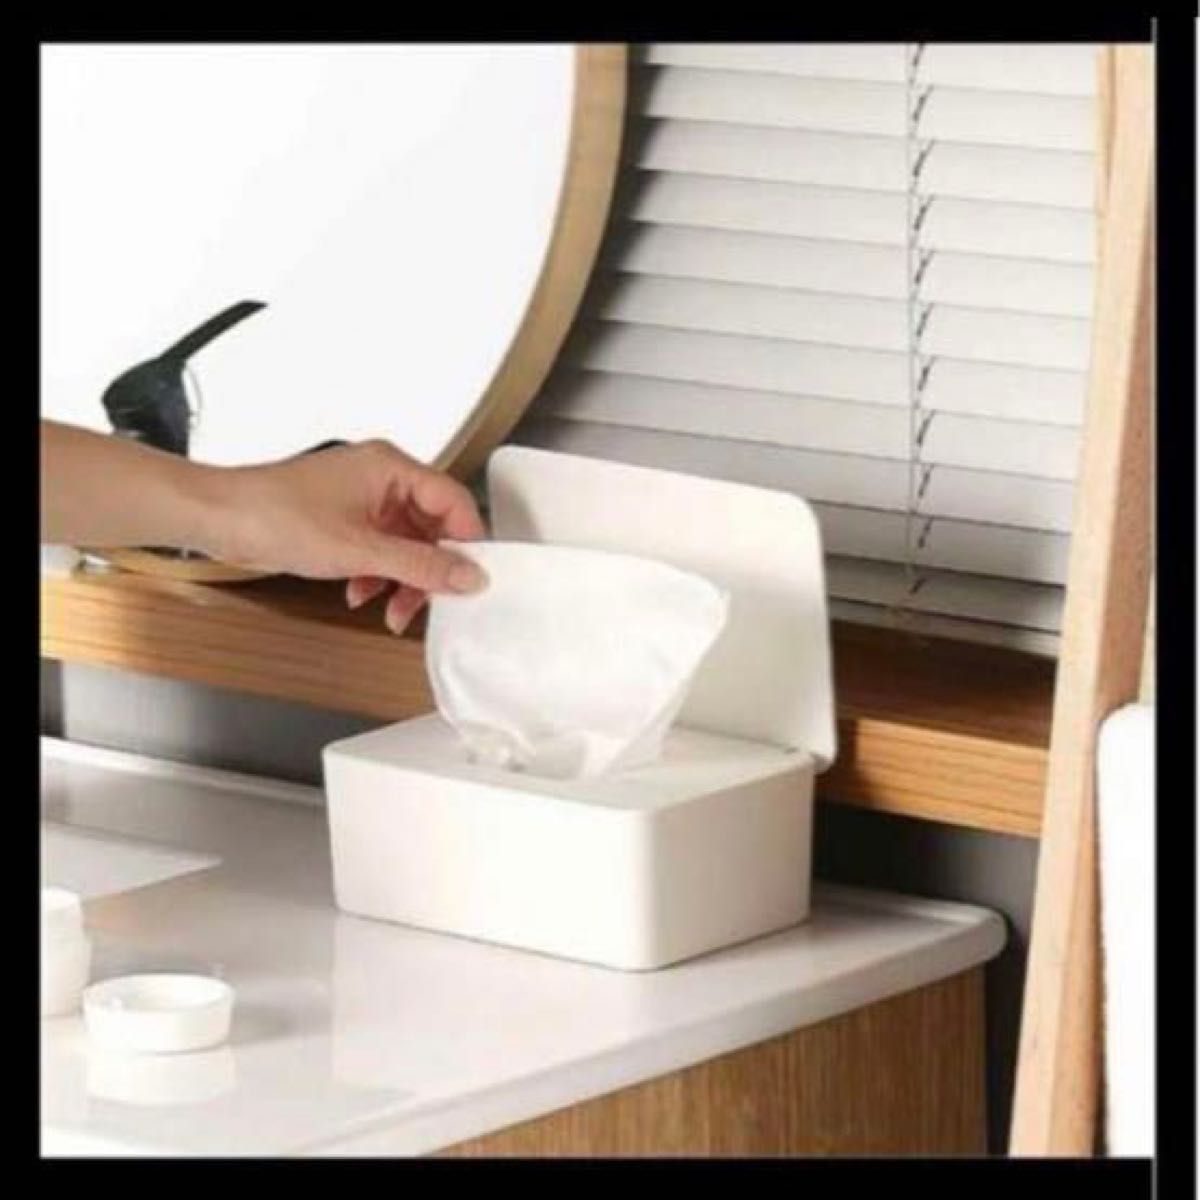 ティッシュケース ティッシュボックス マスクボックス 密閉設計 収納BOX 取出簡単 玄関 リビング オフィス 車 子供部屋